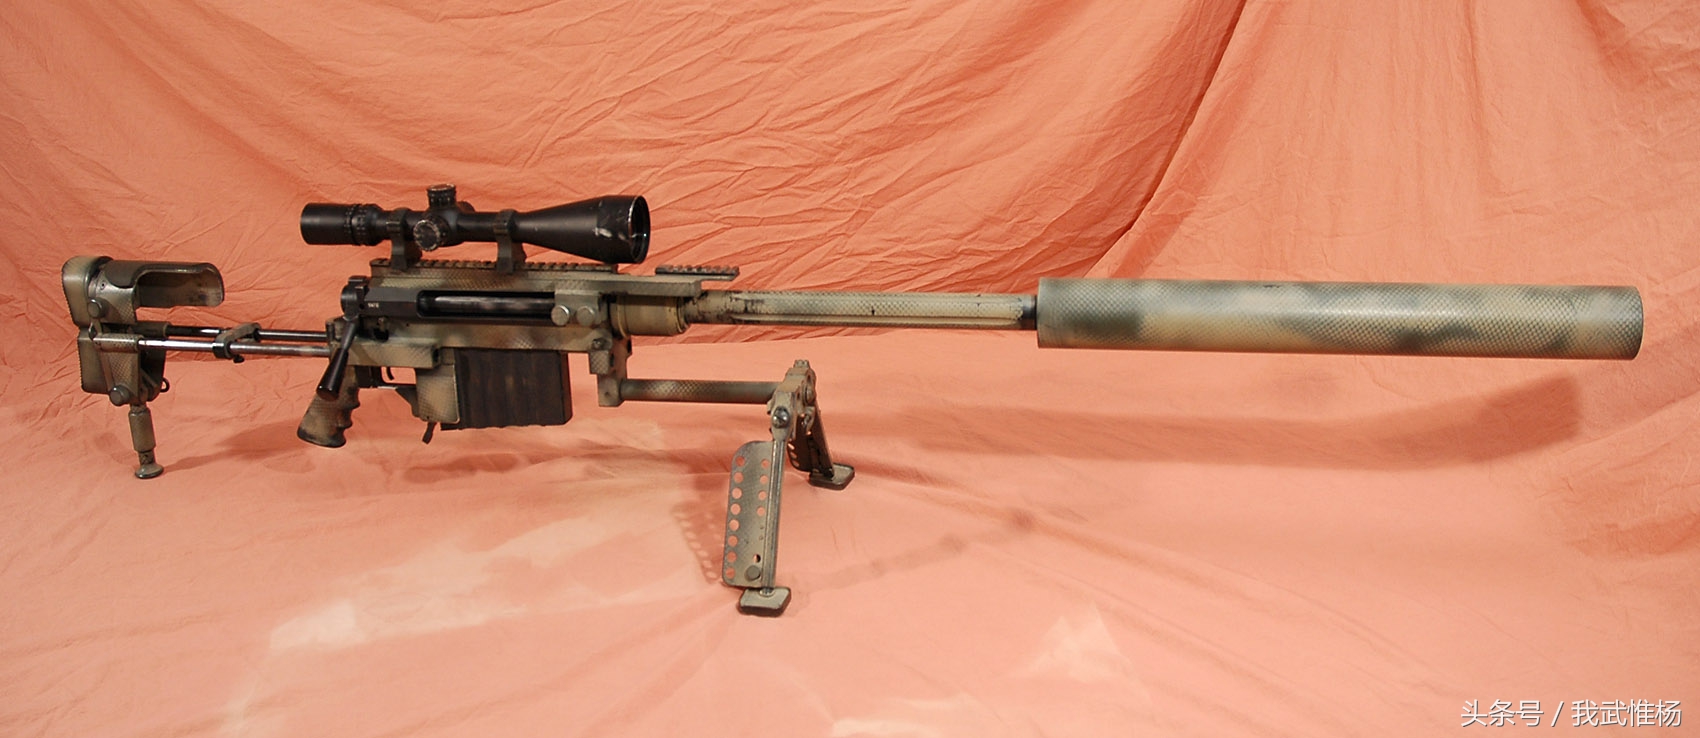 m96步枪图片